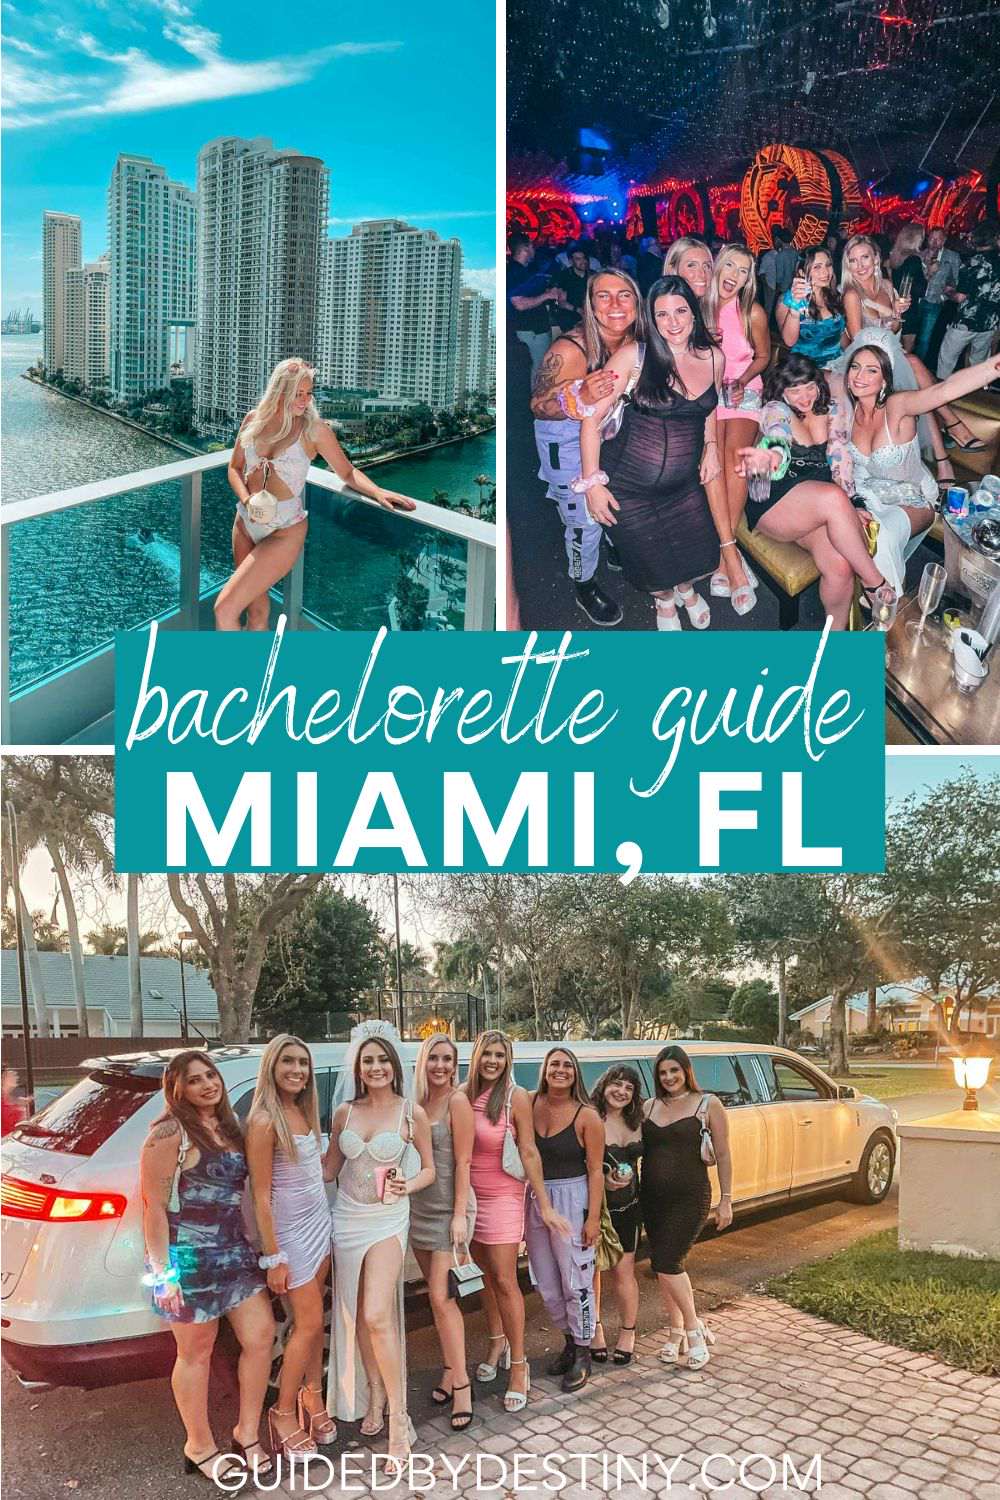 Bachelorette guide Miami Florida